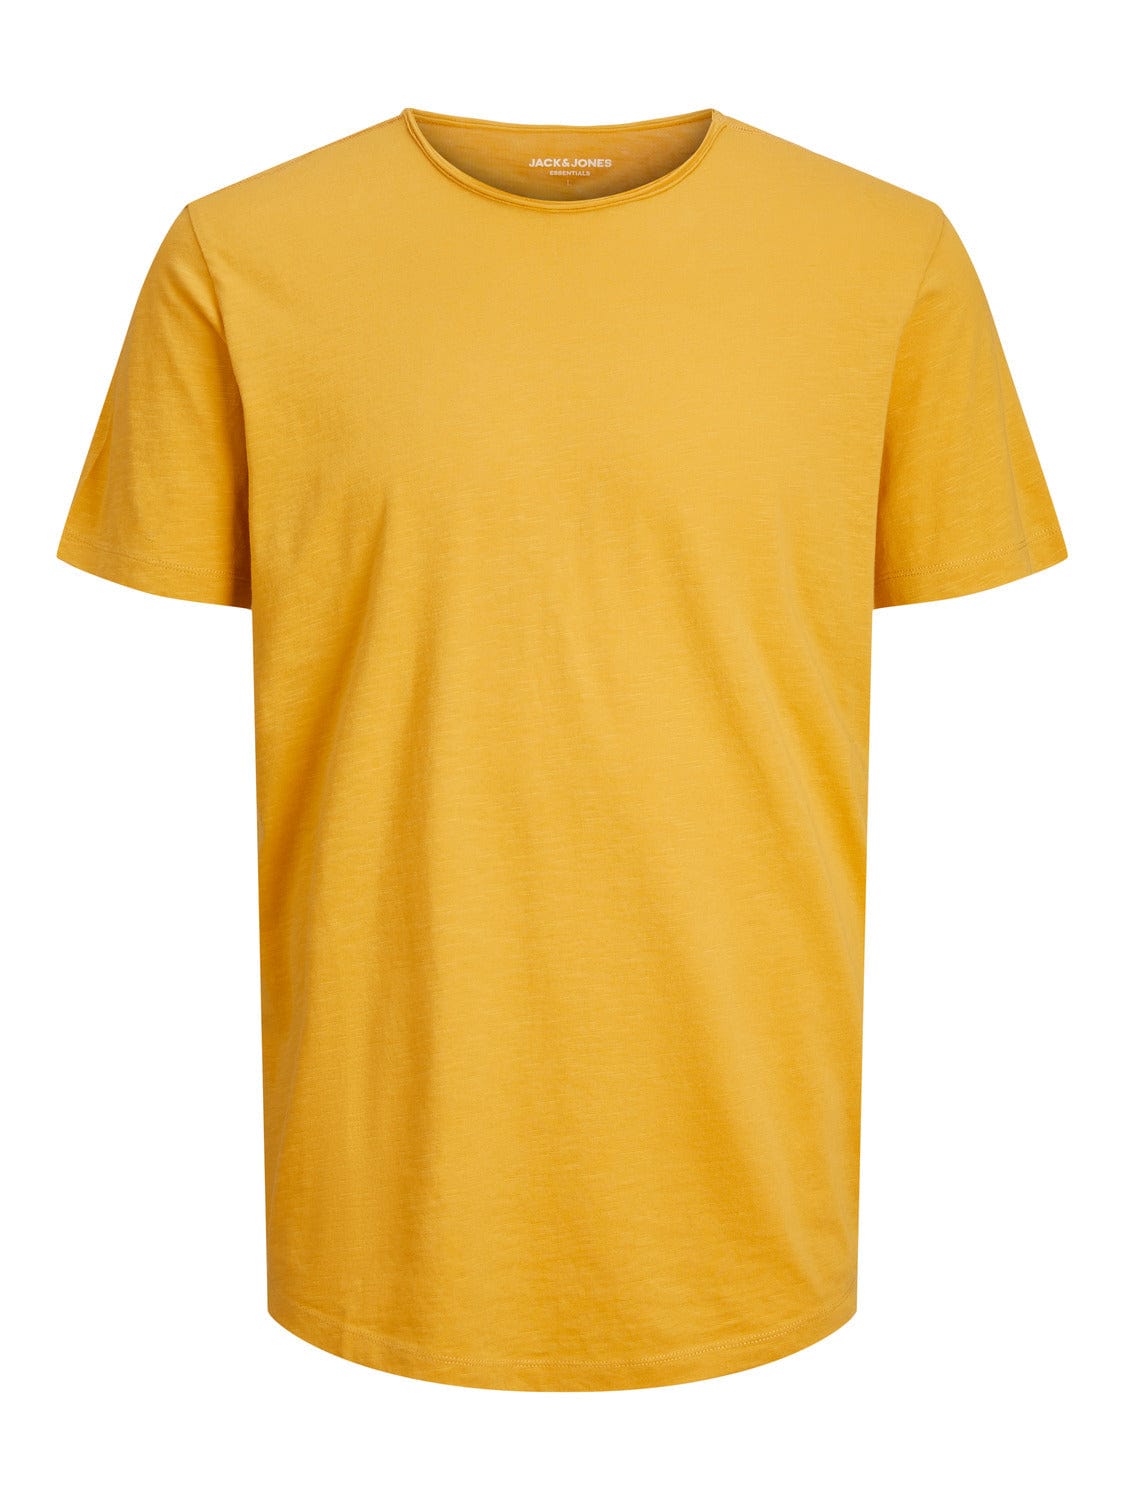 Camiseta básica de manga corta amarilla - JJEBASHER